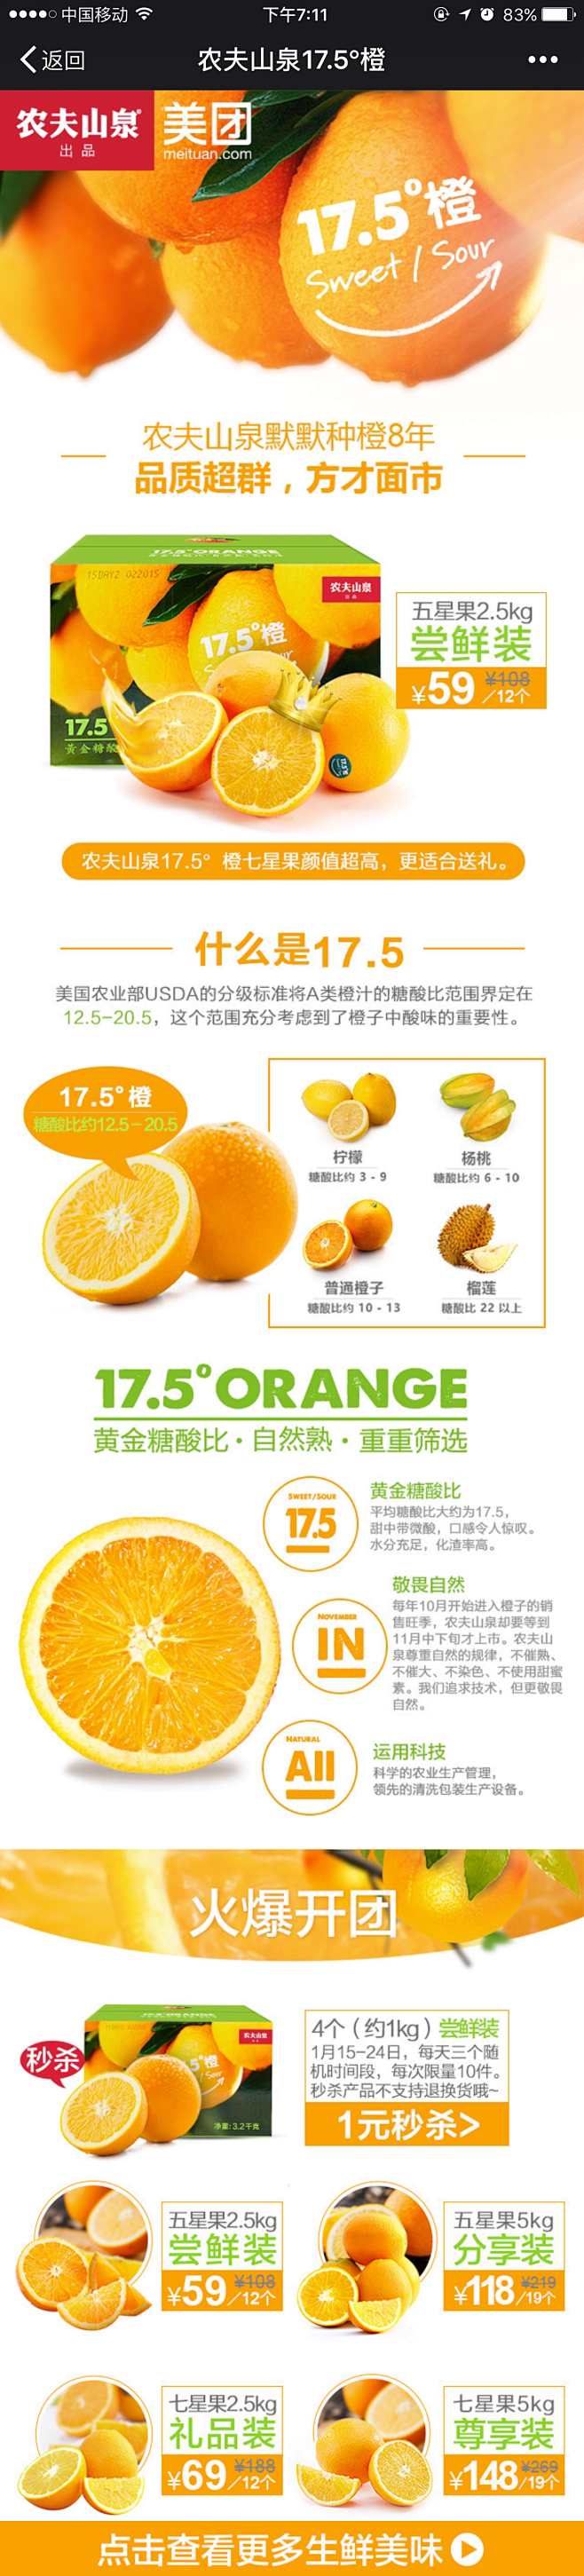 美团农夫山泉鲜橙